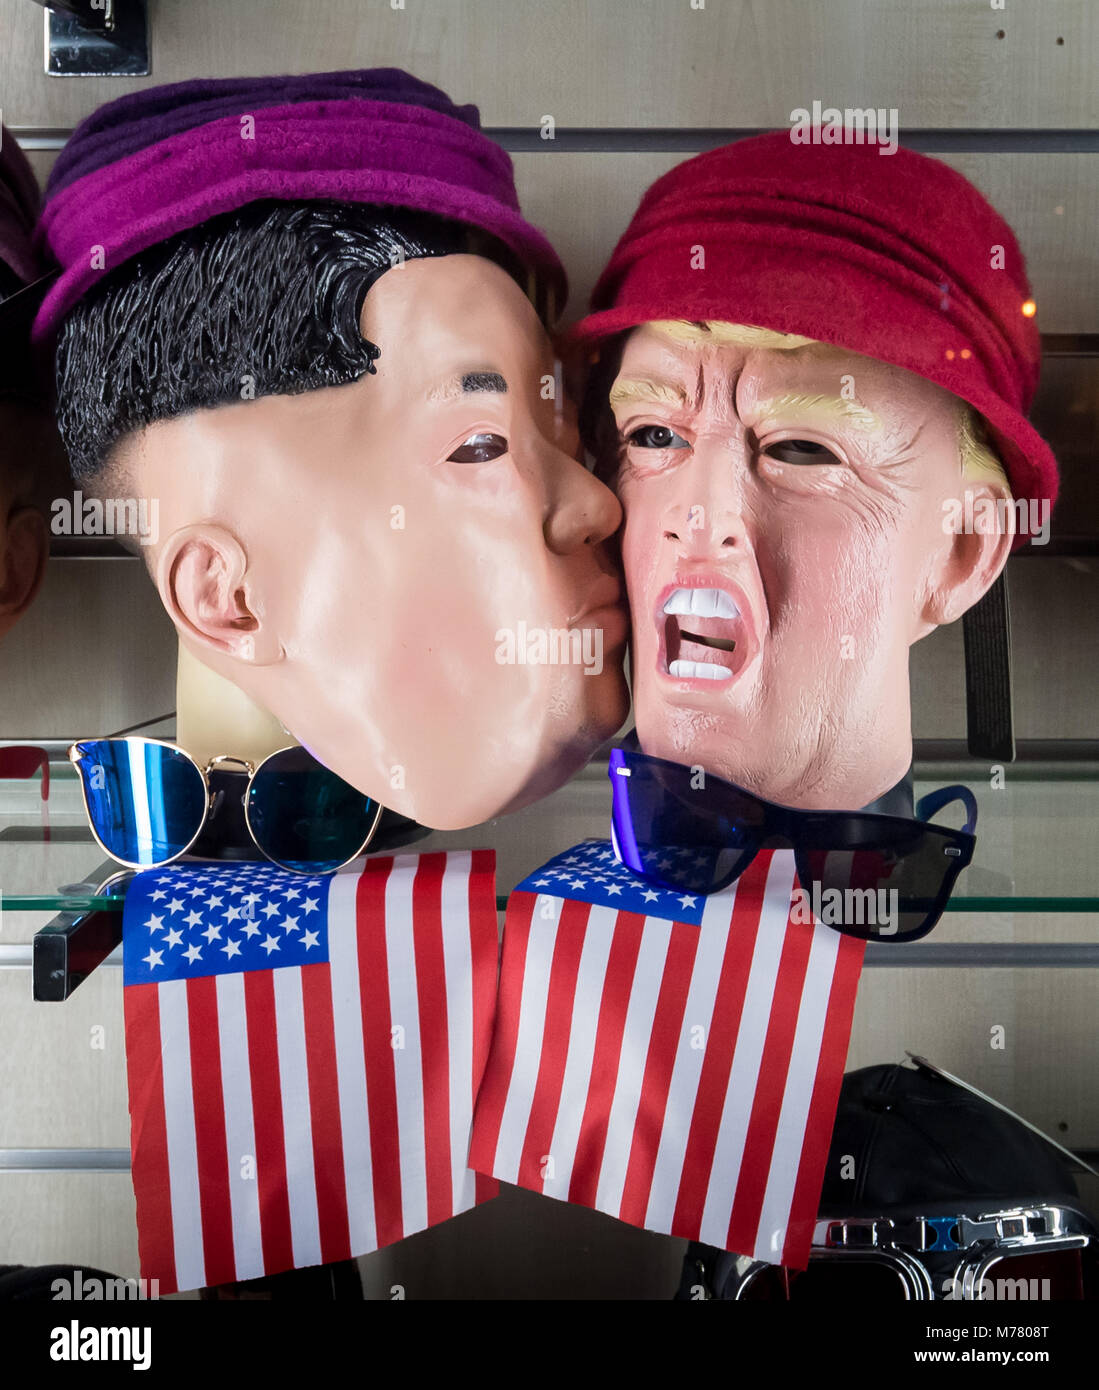 London, Großbritannien. 22 Jan, 2018. Kim Jong-un und Donald Trump Gesichtsmasken sind provozierend in West London shop Fenster angeordnet. Credit: Guy Corbishley/Alamy leben Nachrichten Stockfoto